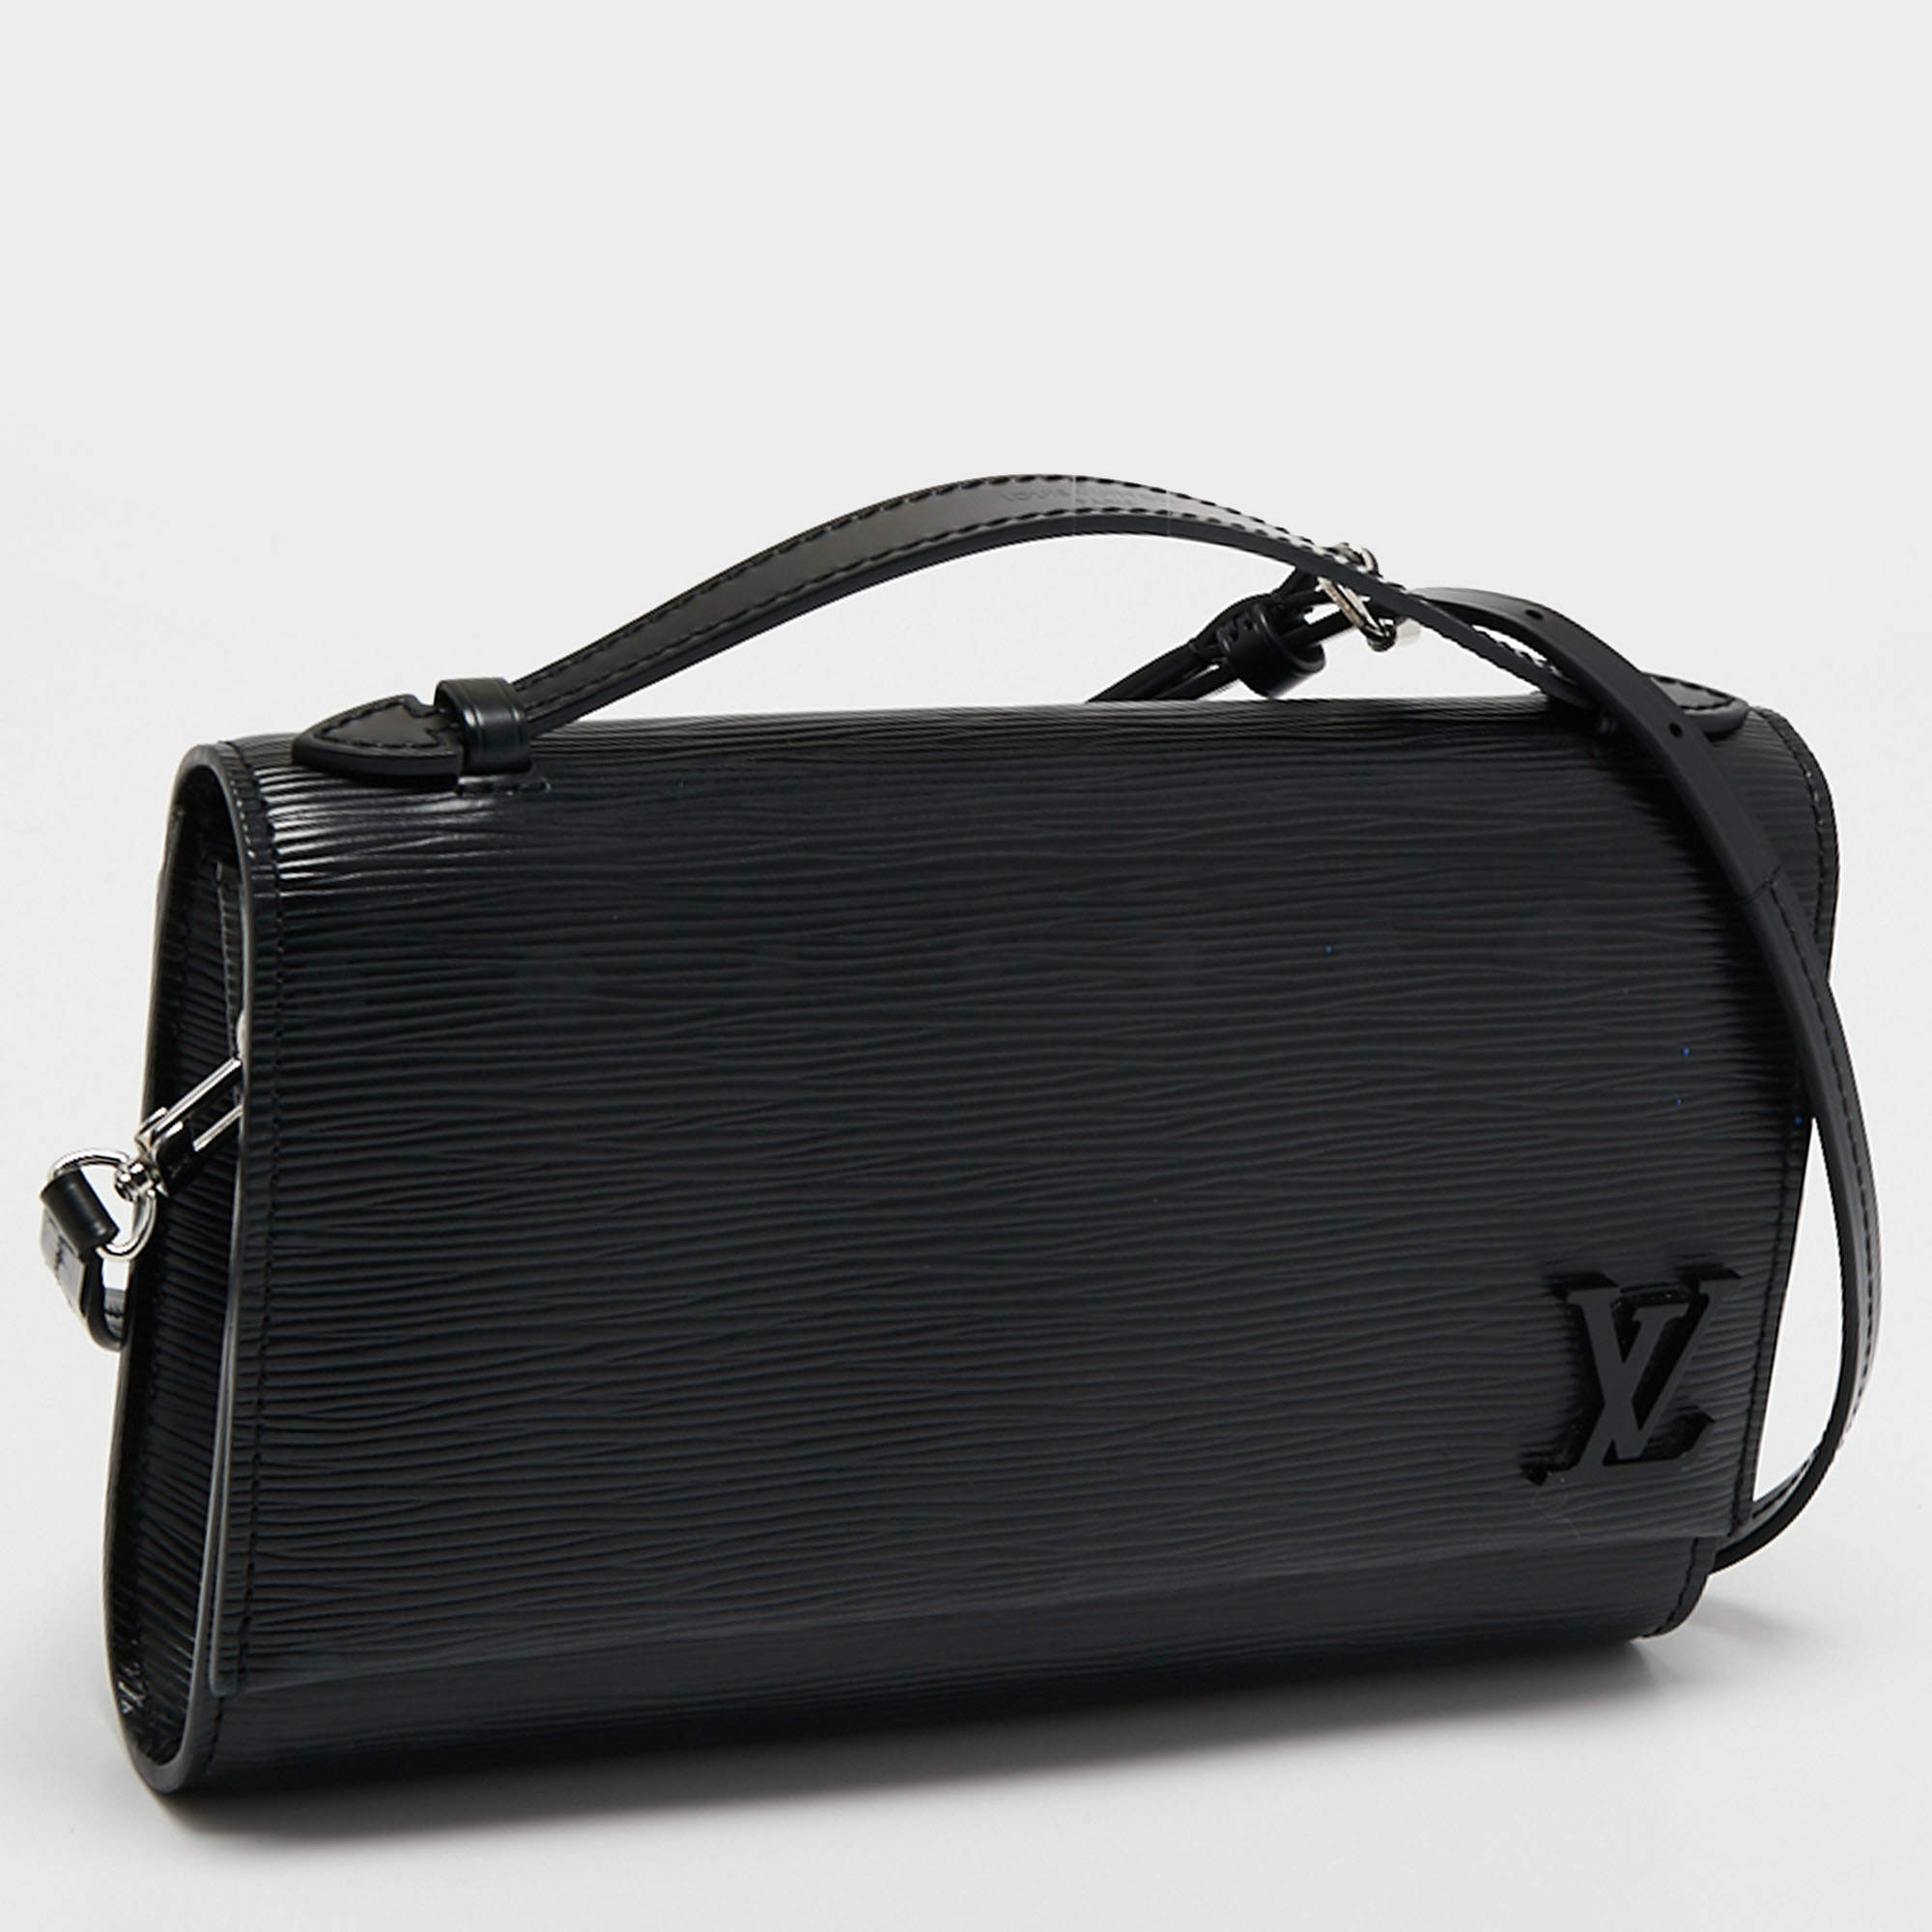 Louis Vuitton Dune Epi Leather Clery Pochette Bag